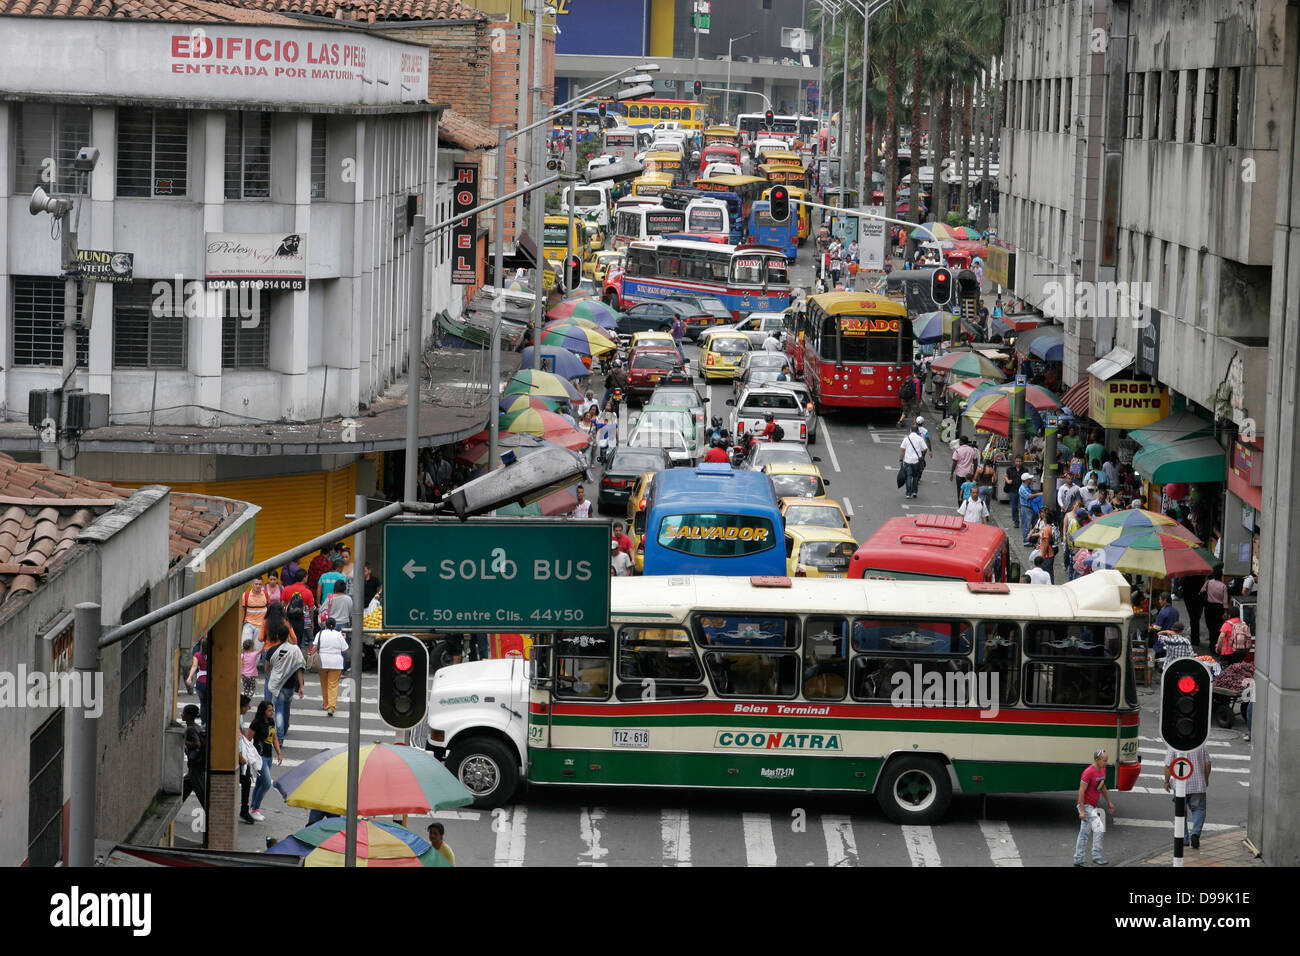 Embouteillage sur la rue dans le centre de Medellin, Colombie, Amérique du Sud Banque D'Images